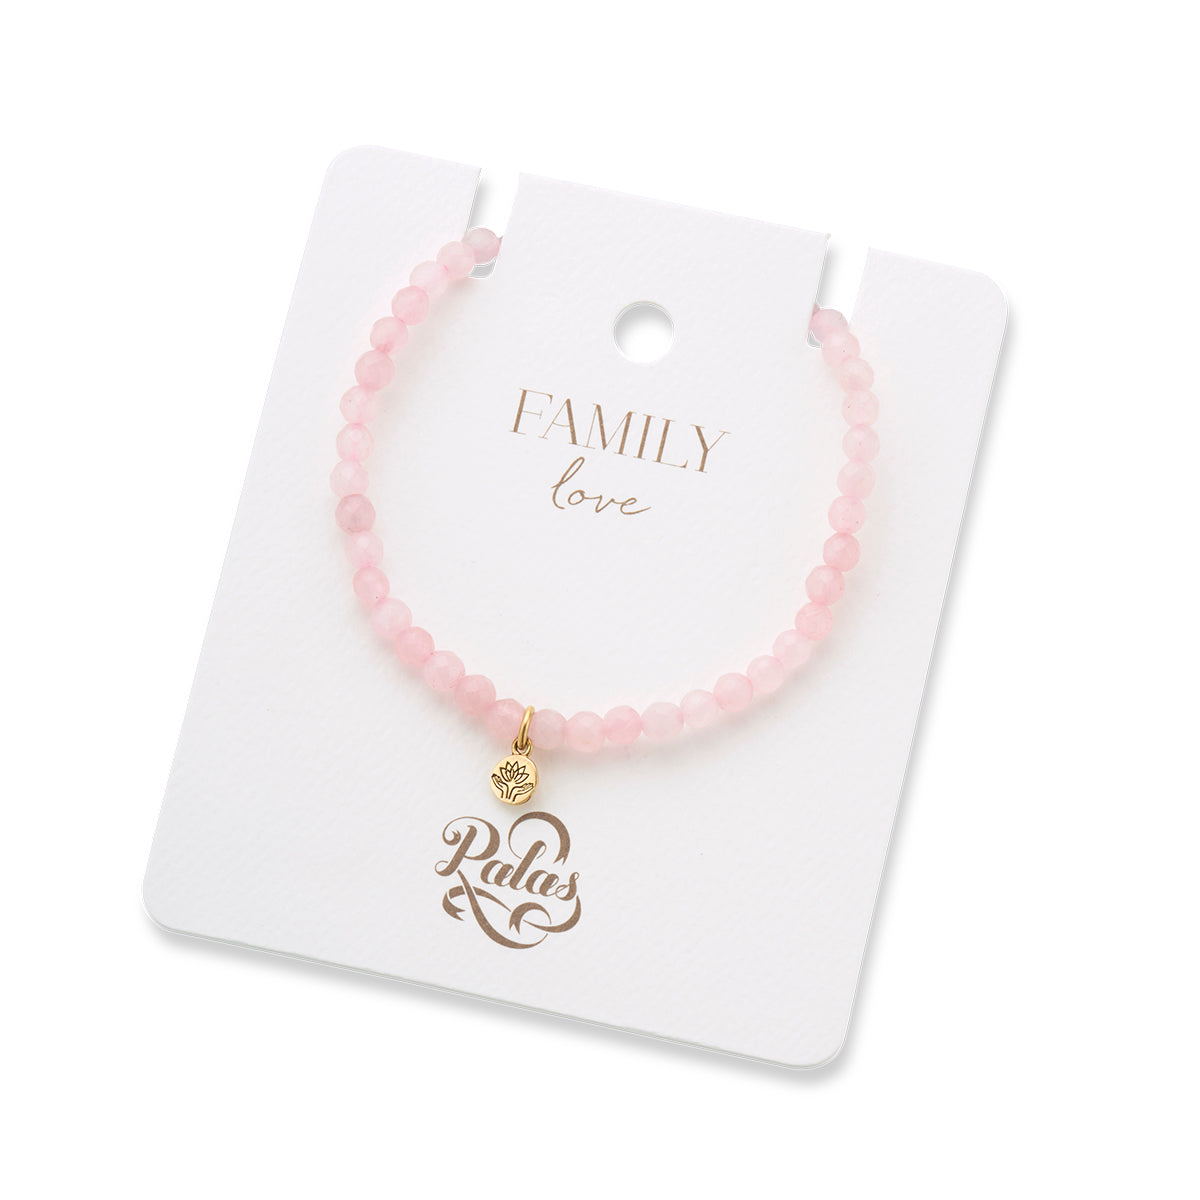 Family love rose quartz gem bracelet